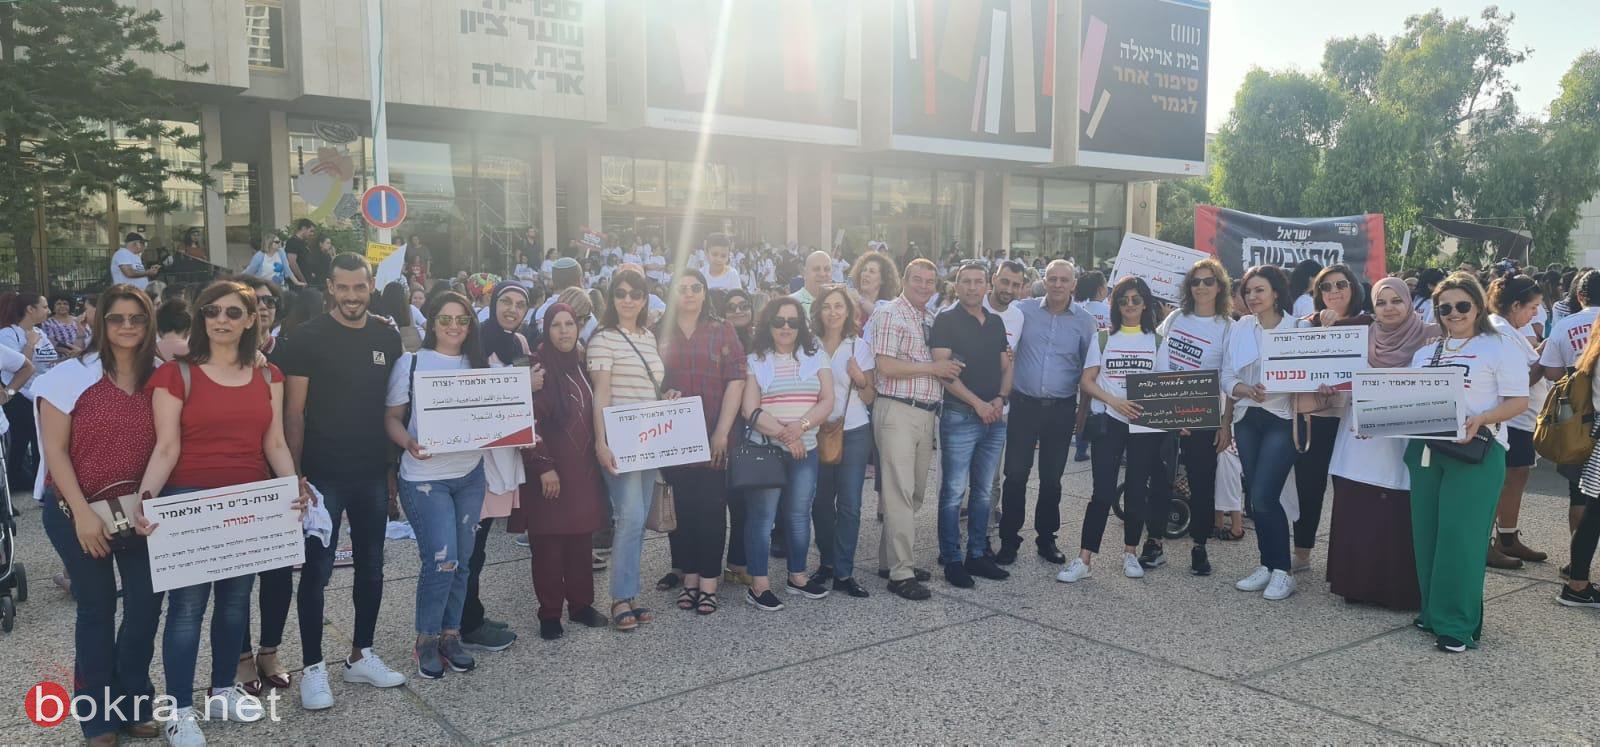 طاقم المدرسة الجماهيريّة بئر الأمير الناصرة وطاقم اكاديميّة الأمهات، يشاركون في المظاهرة في تل أبيب-2